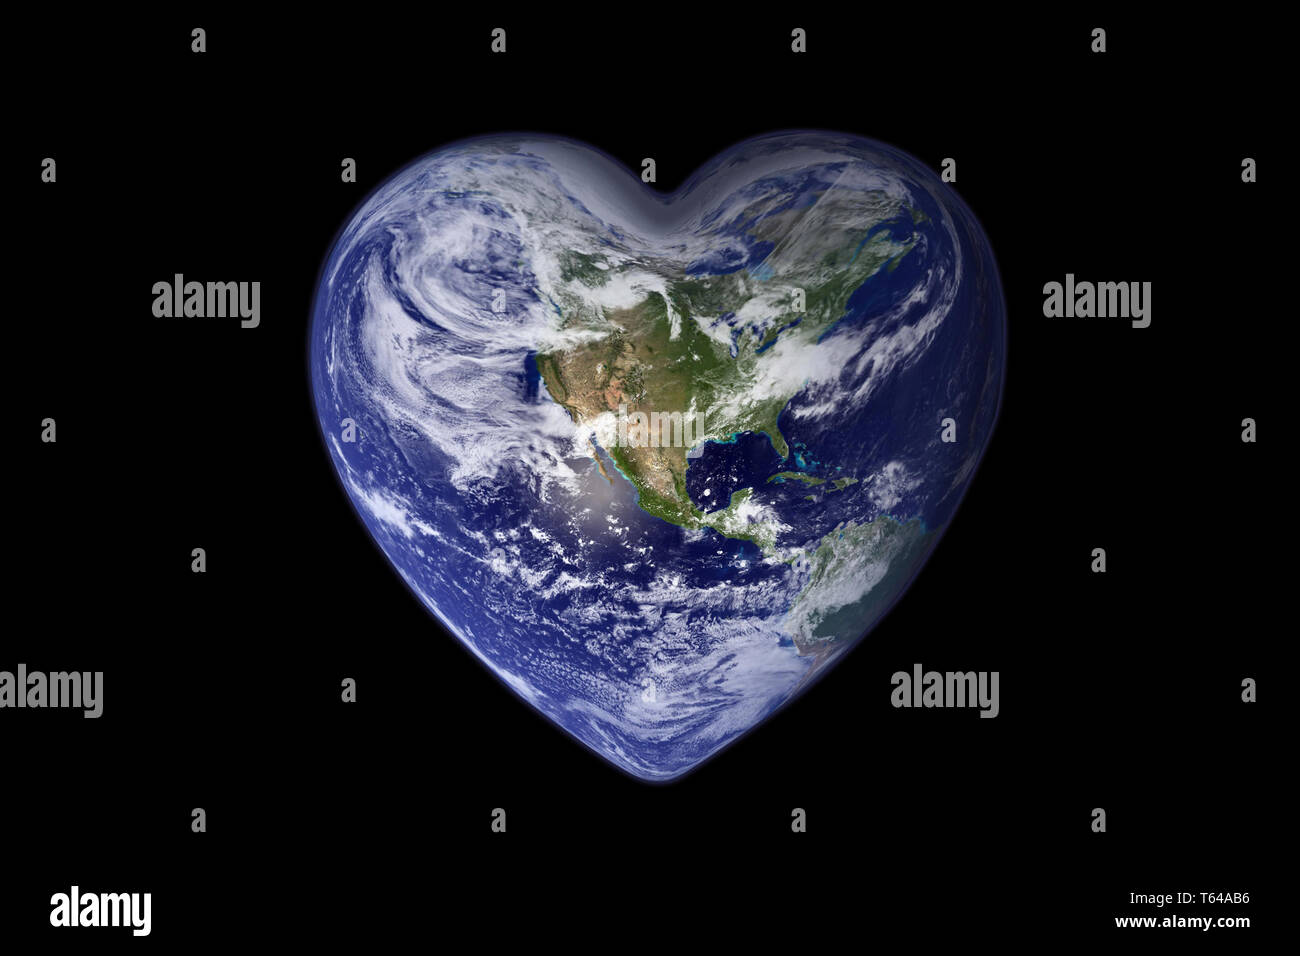 Masse in die Form eines Herzens, Ökologie und Umwelt Konzept - Elemente dieses Bild sind von der NASA eingerichtet Stockfoto